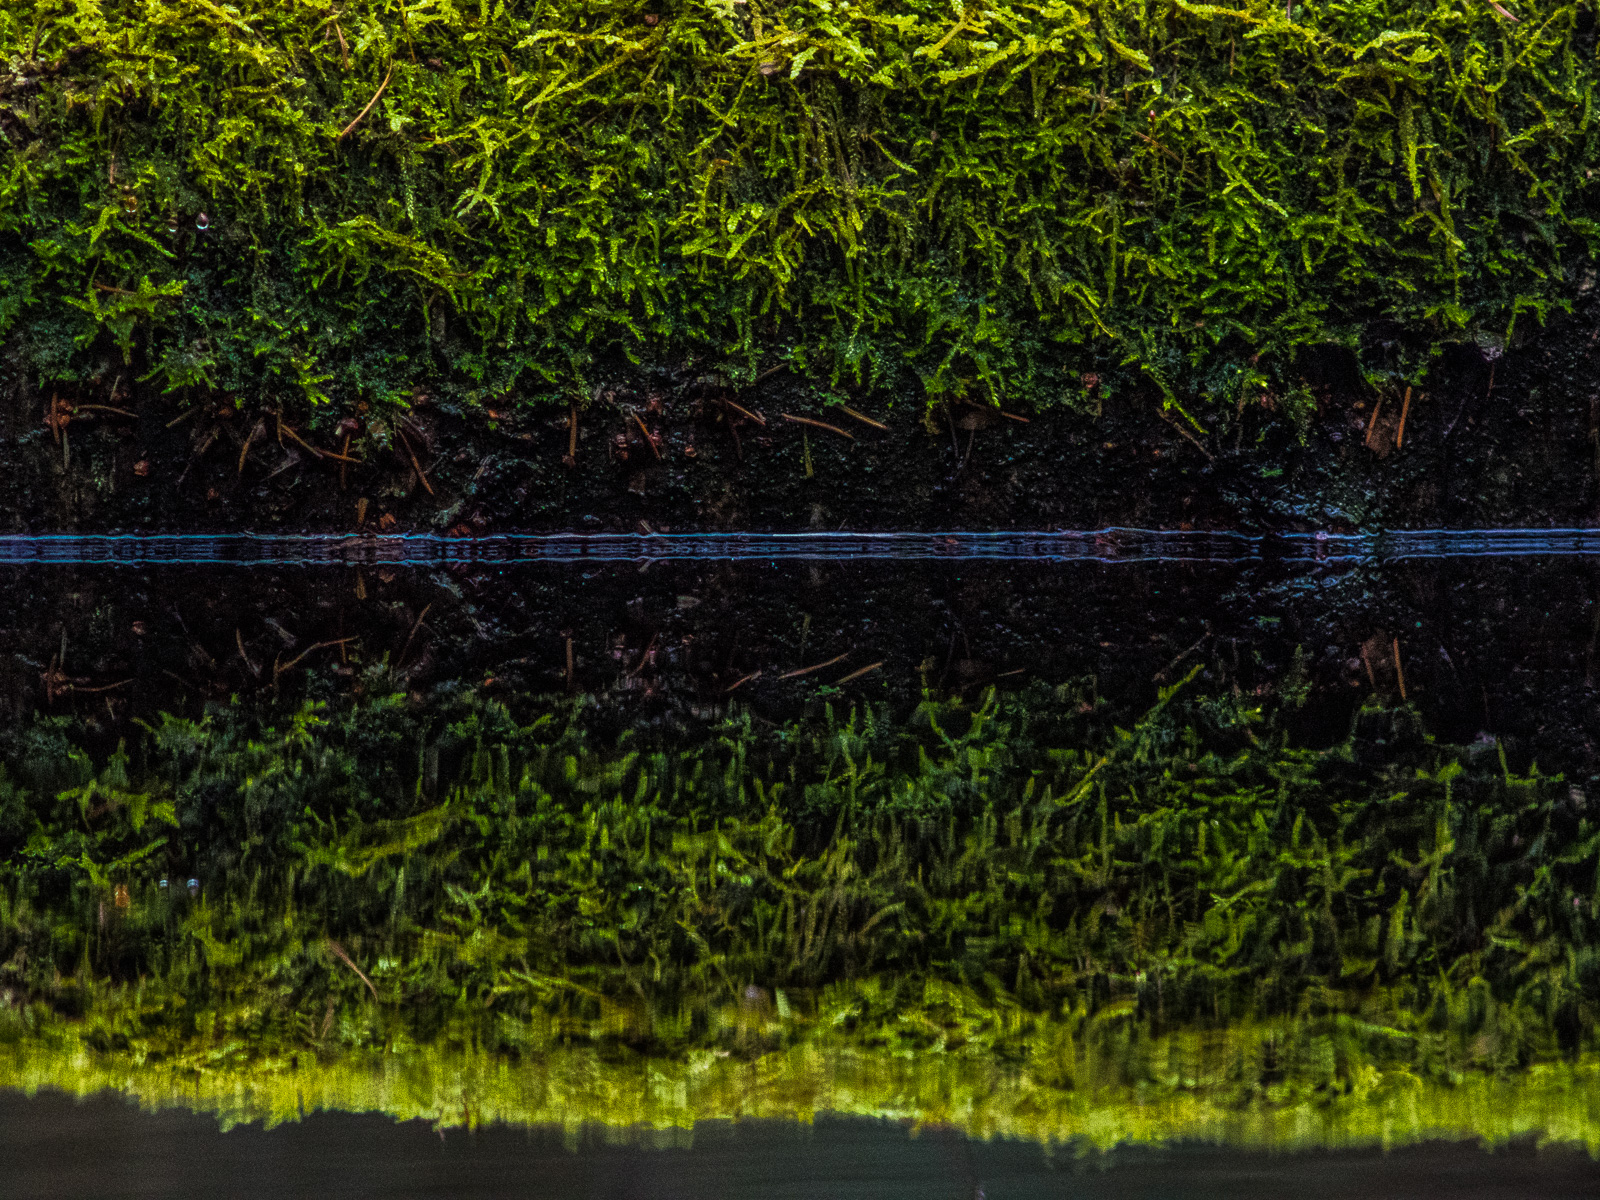 Ein stark bemooster Baumstamm liegt im Wasser. Die Linie der Wasseroberfläche ist etwas oberhalb der Bildmitte, so dass man den oberen Rand des Baumstamms nur in seinem Spiegelbild sieht.